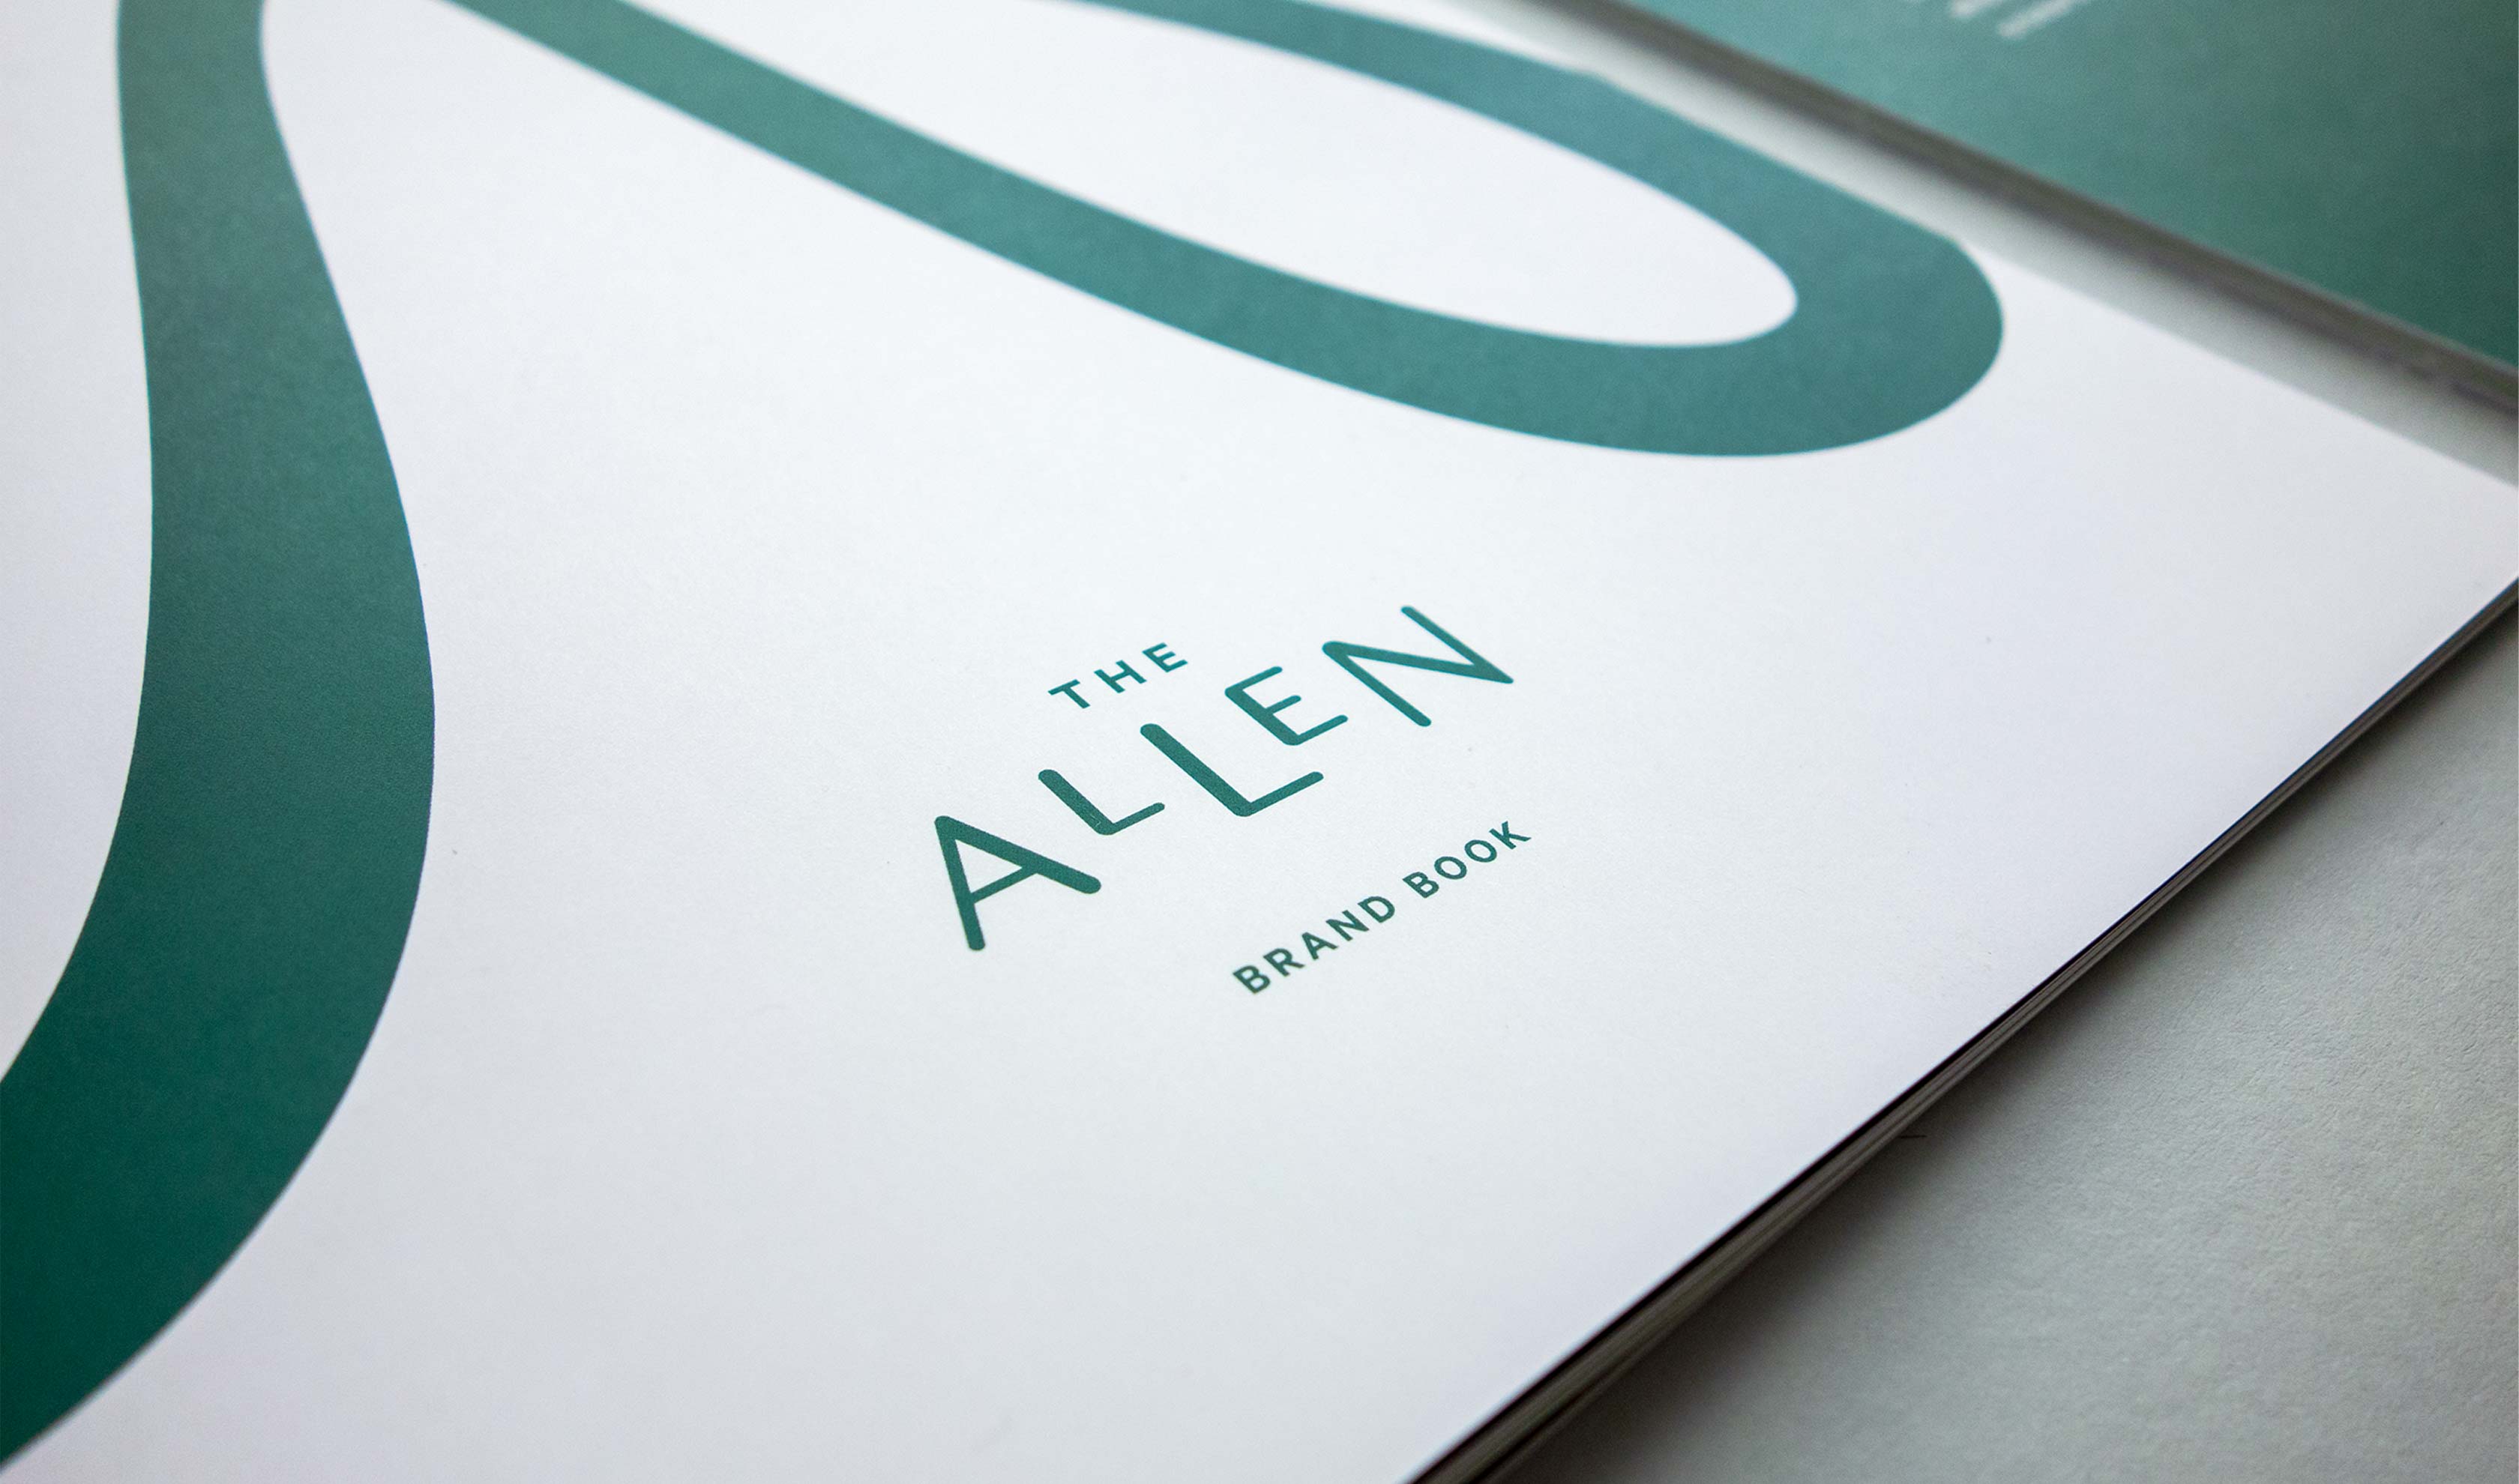 The Allen Branding